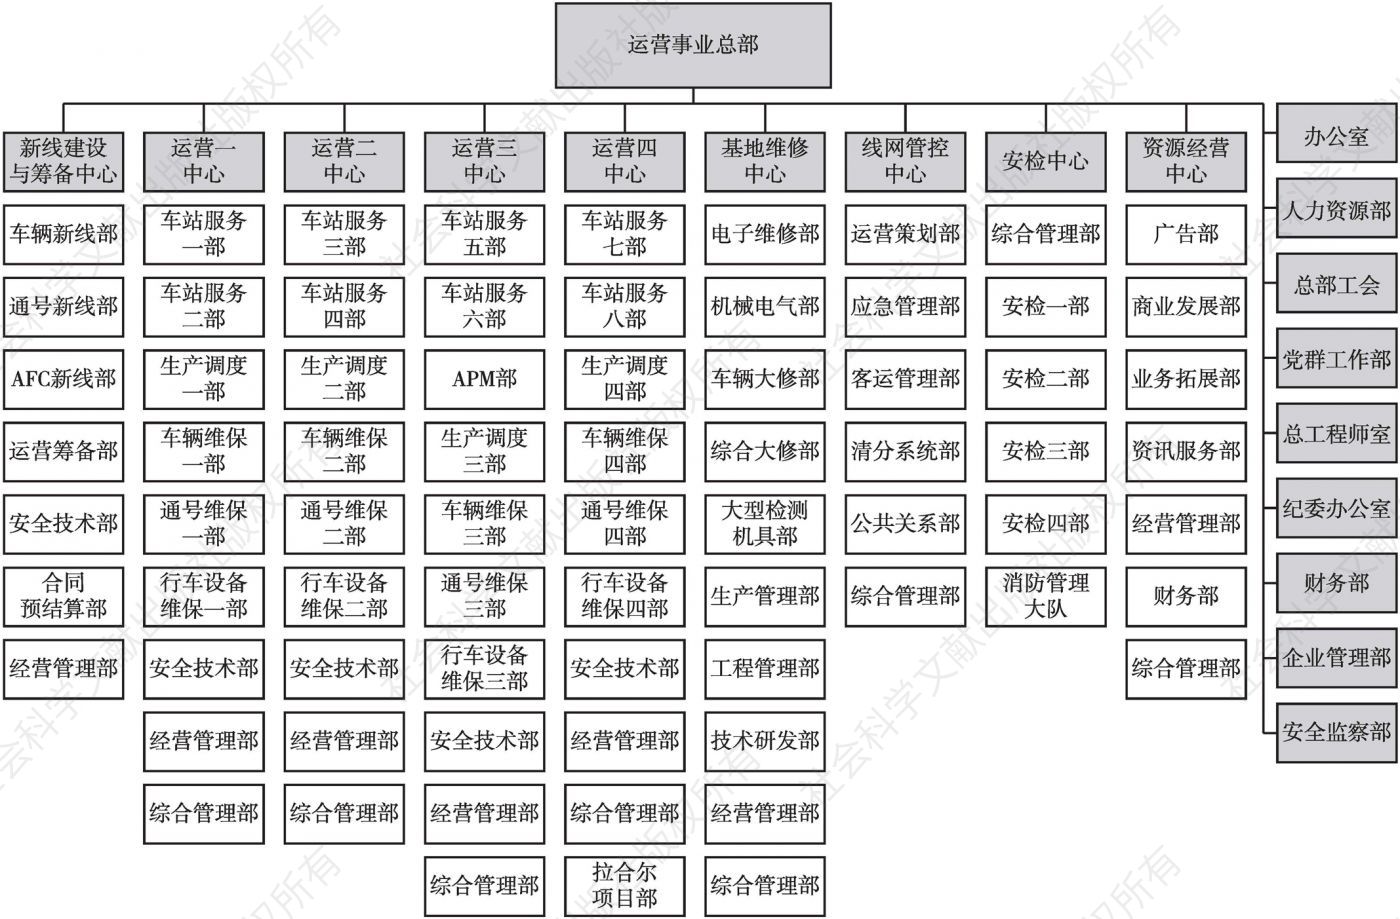 图4 广州地铁运营总部组织架构